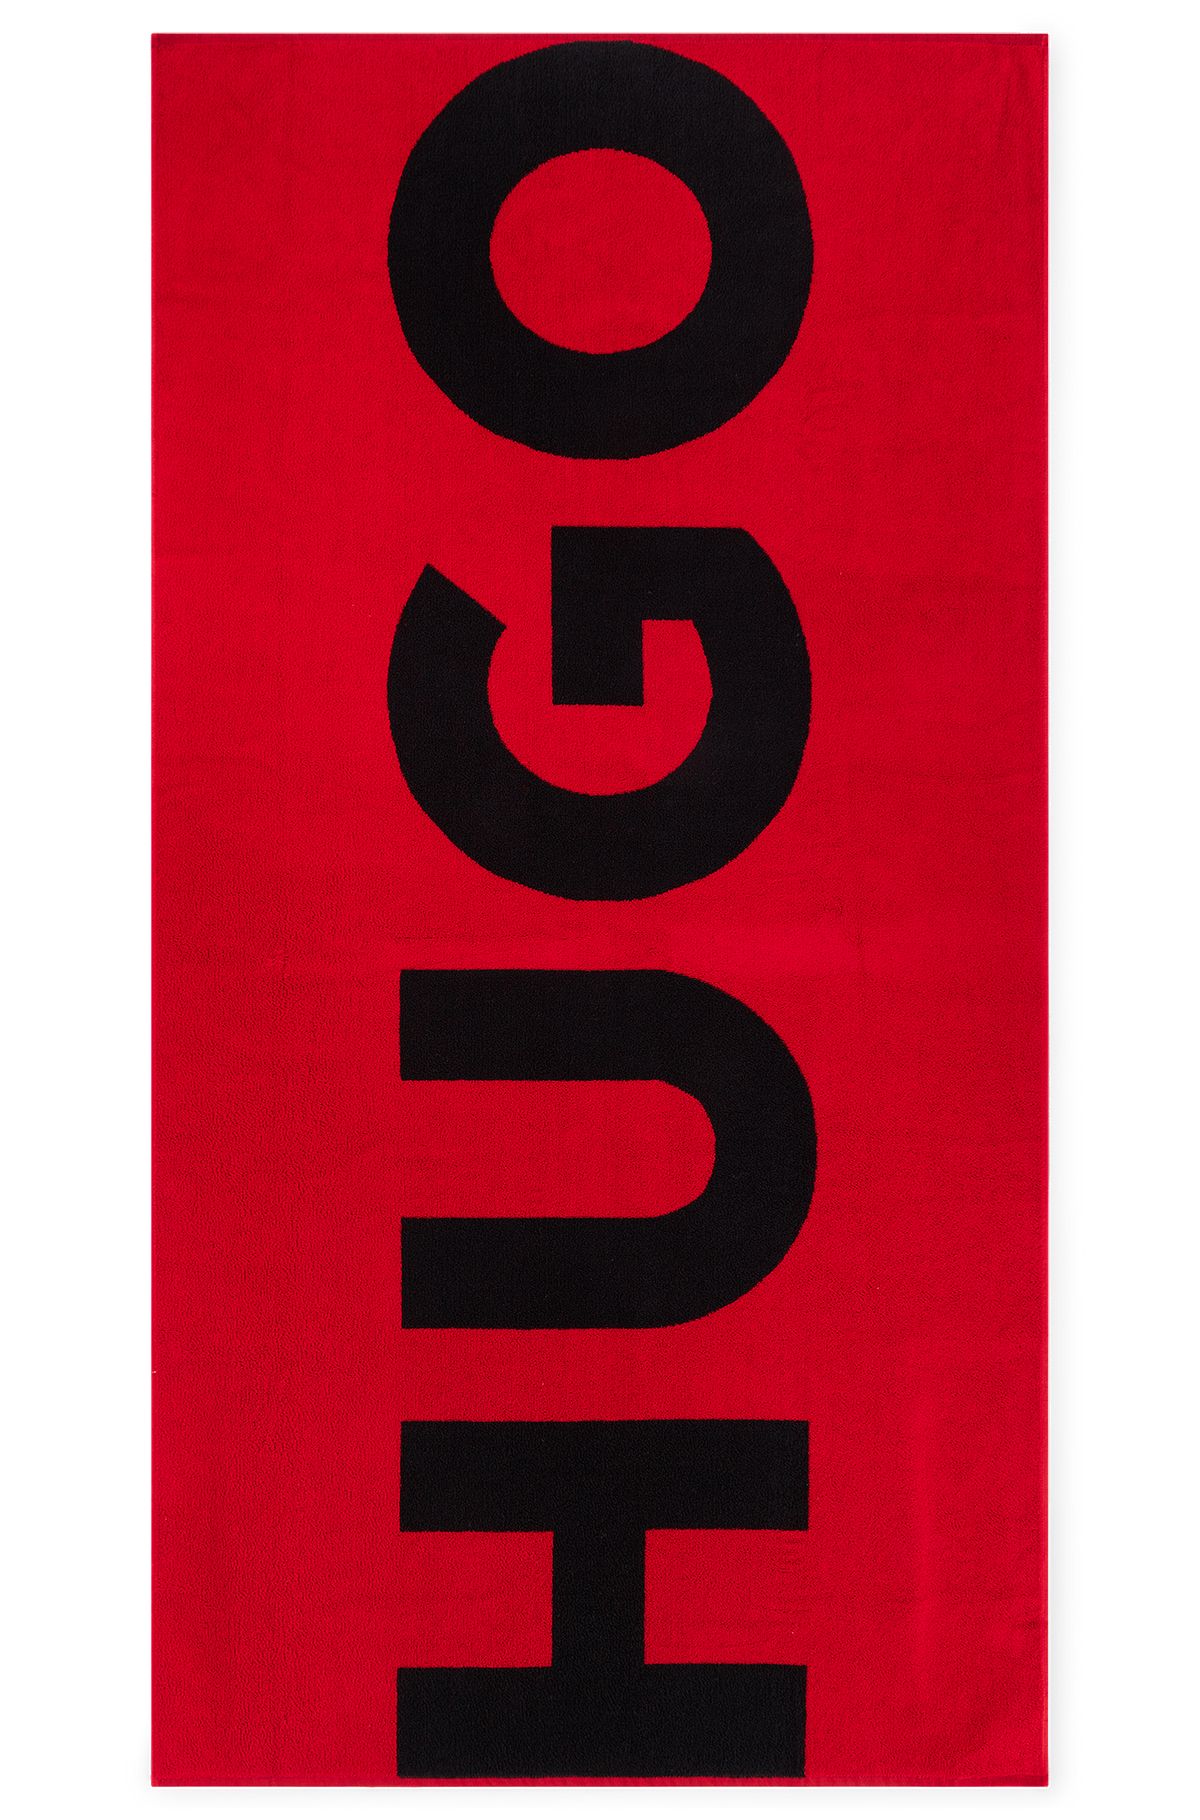 Badetuch aus Baumwoll-Terry mit kontrastfarbenem Logo, Rot